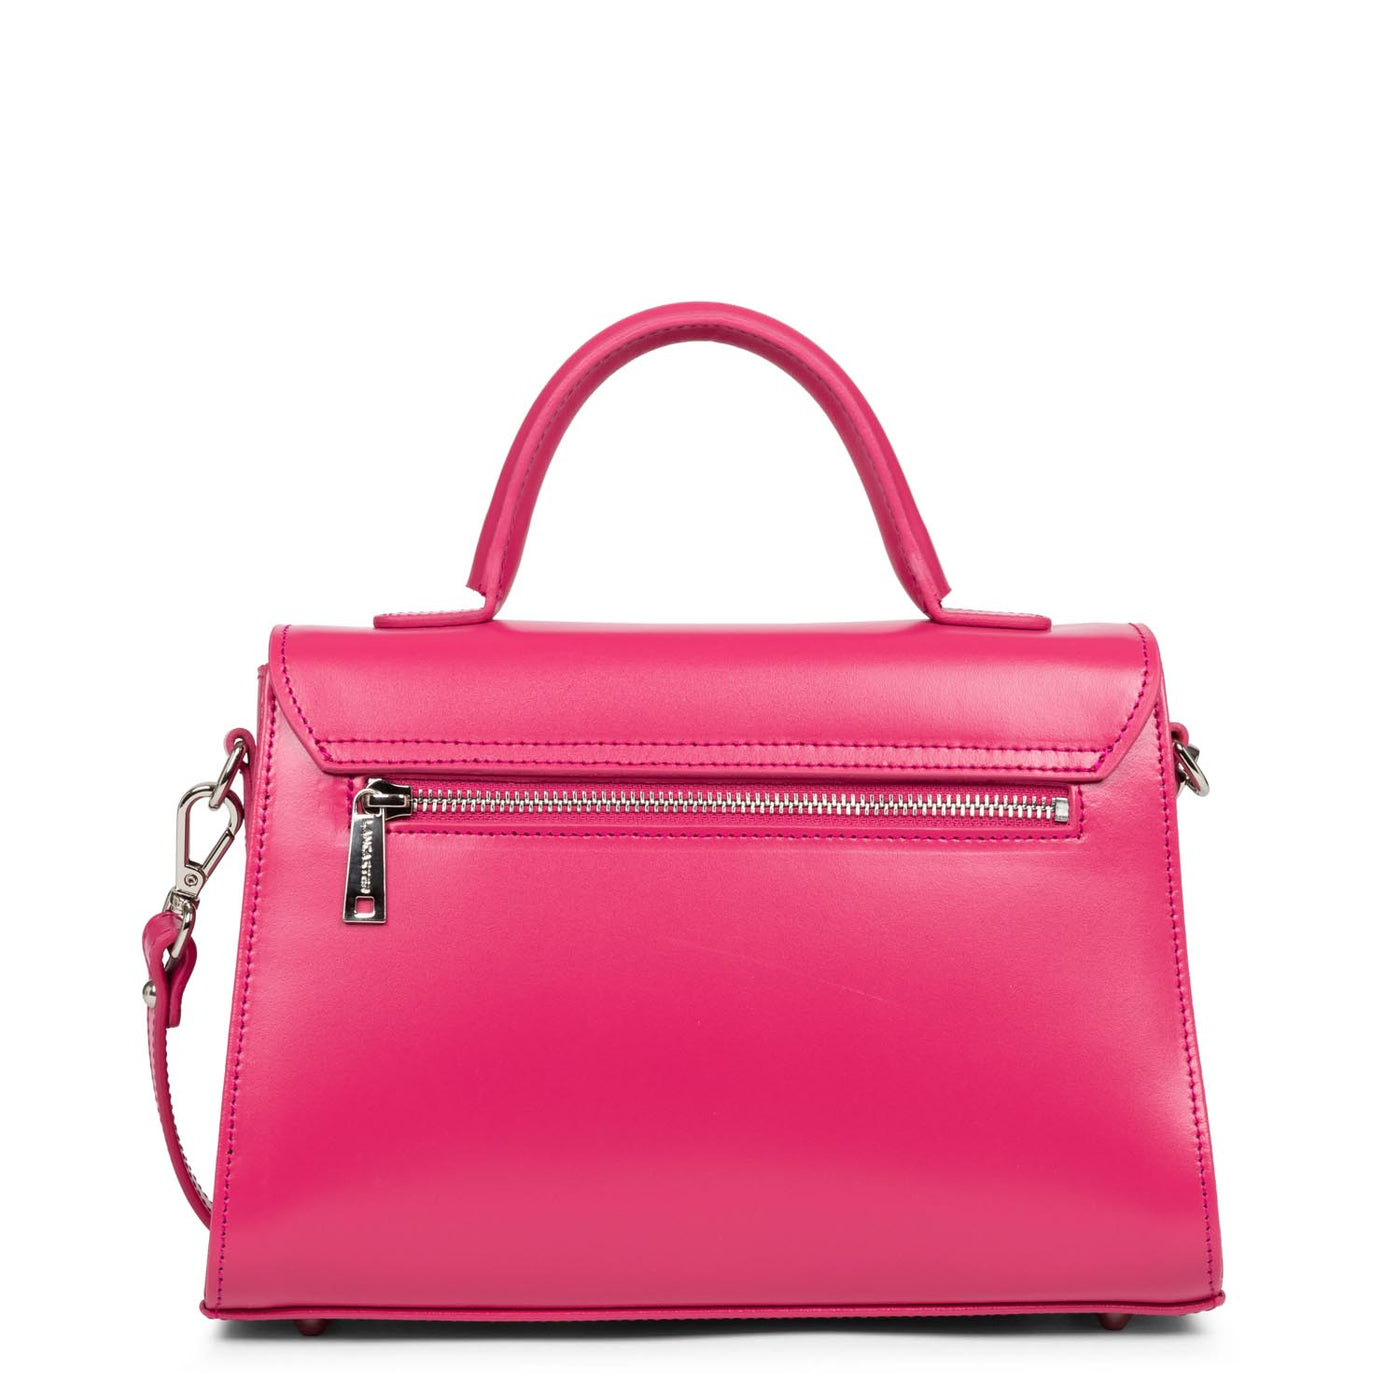 m handbag - suave even #couleur_fuxia